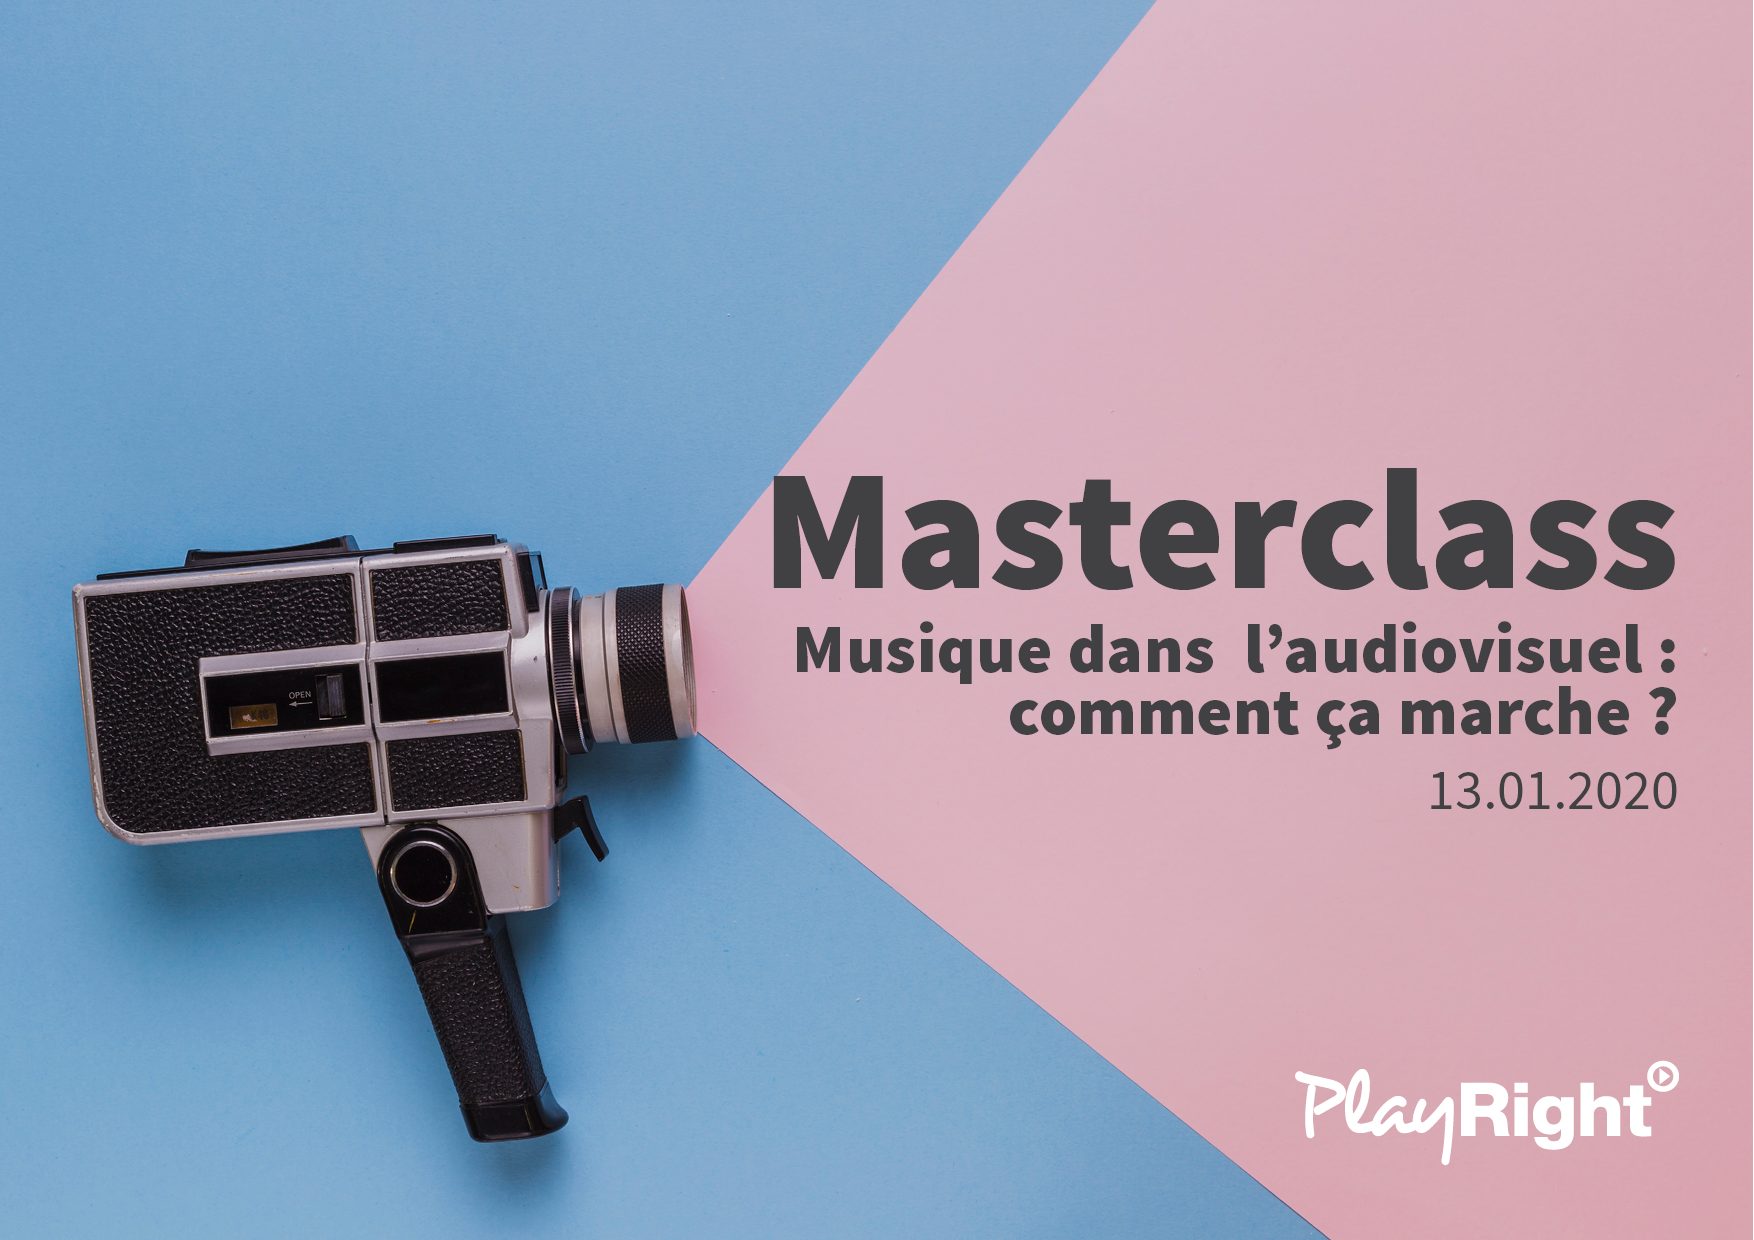 Masterclass “Musique dans  l’audiovisuel : comment ça marche ?”